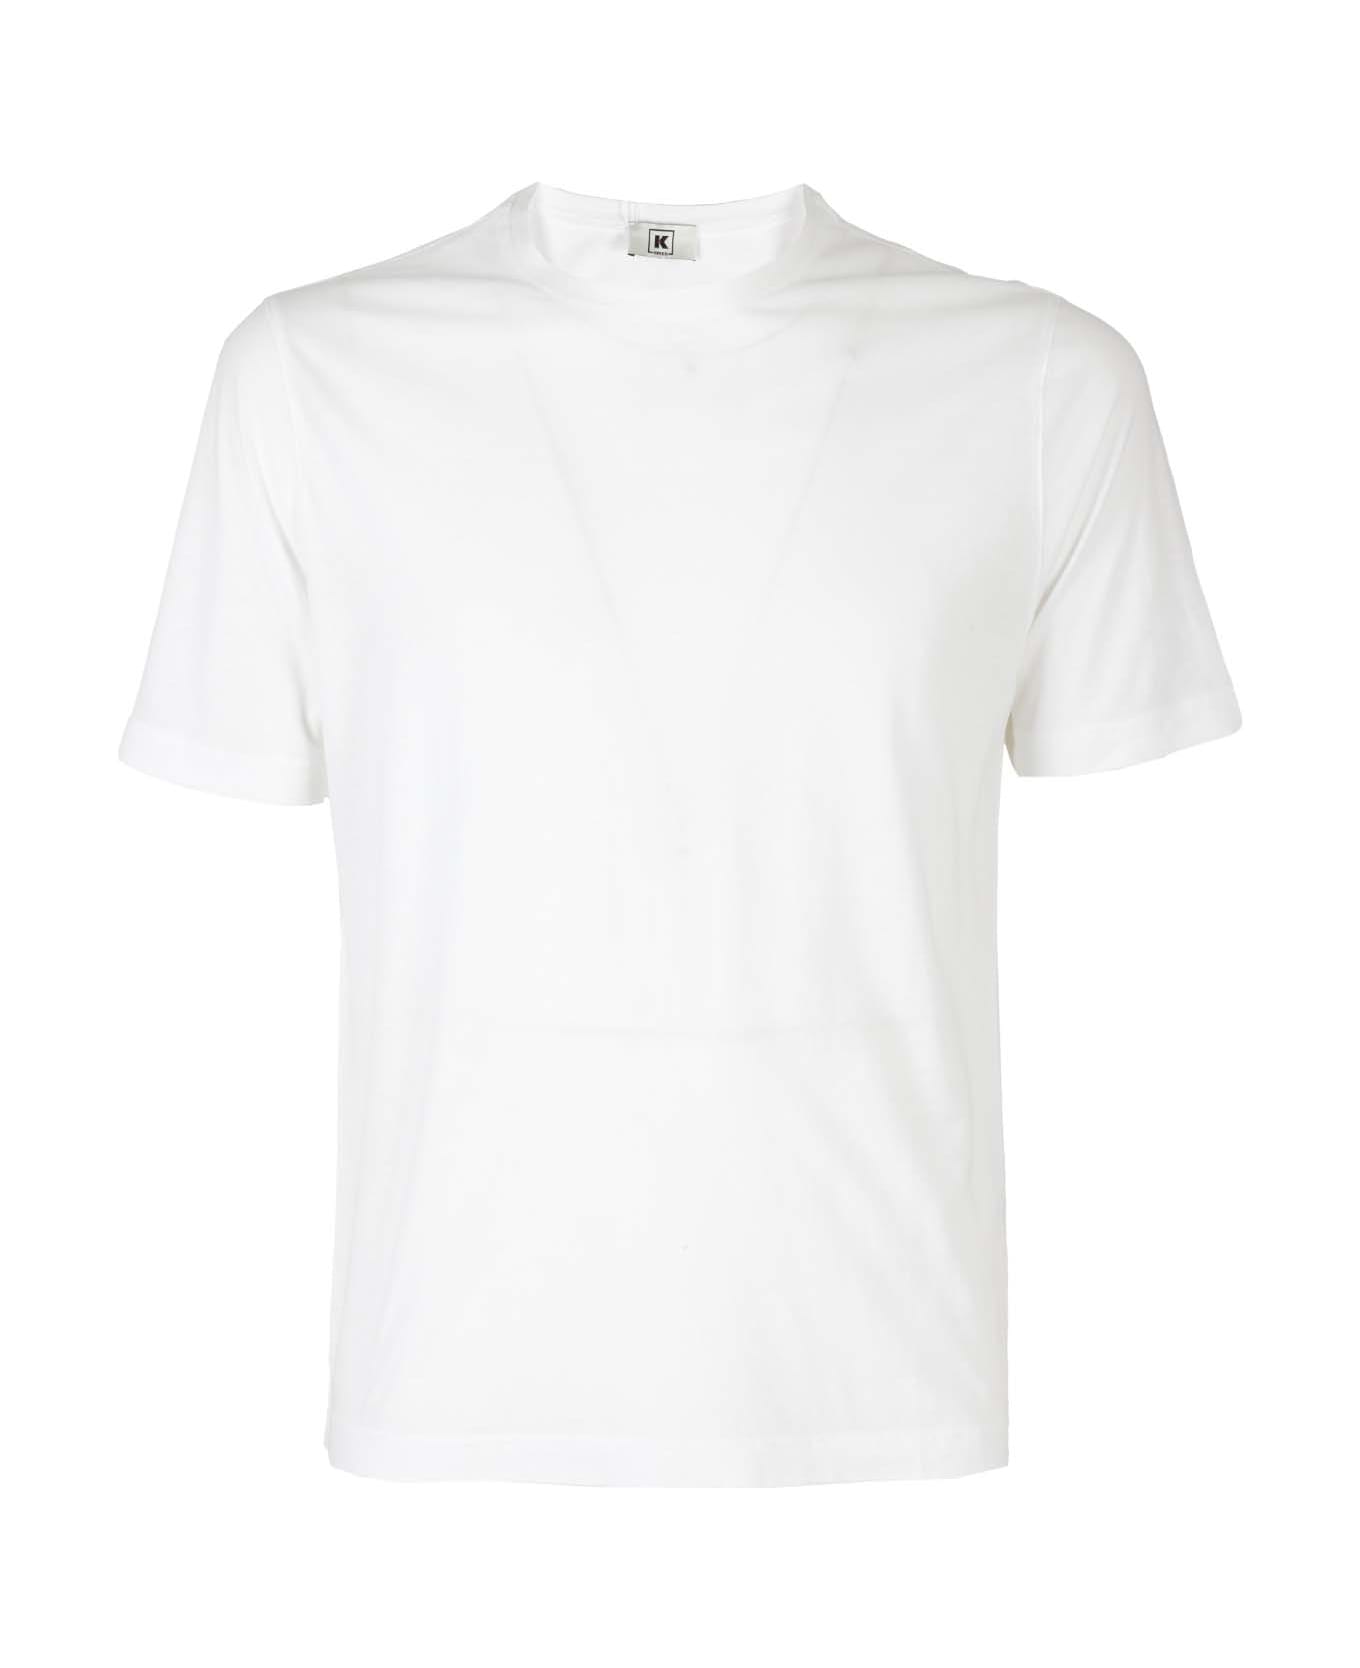 Kired Kiss Man Tshirt - White シャツ